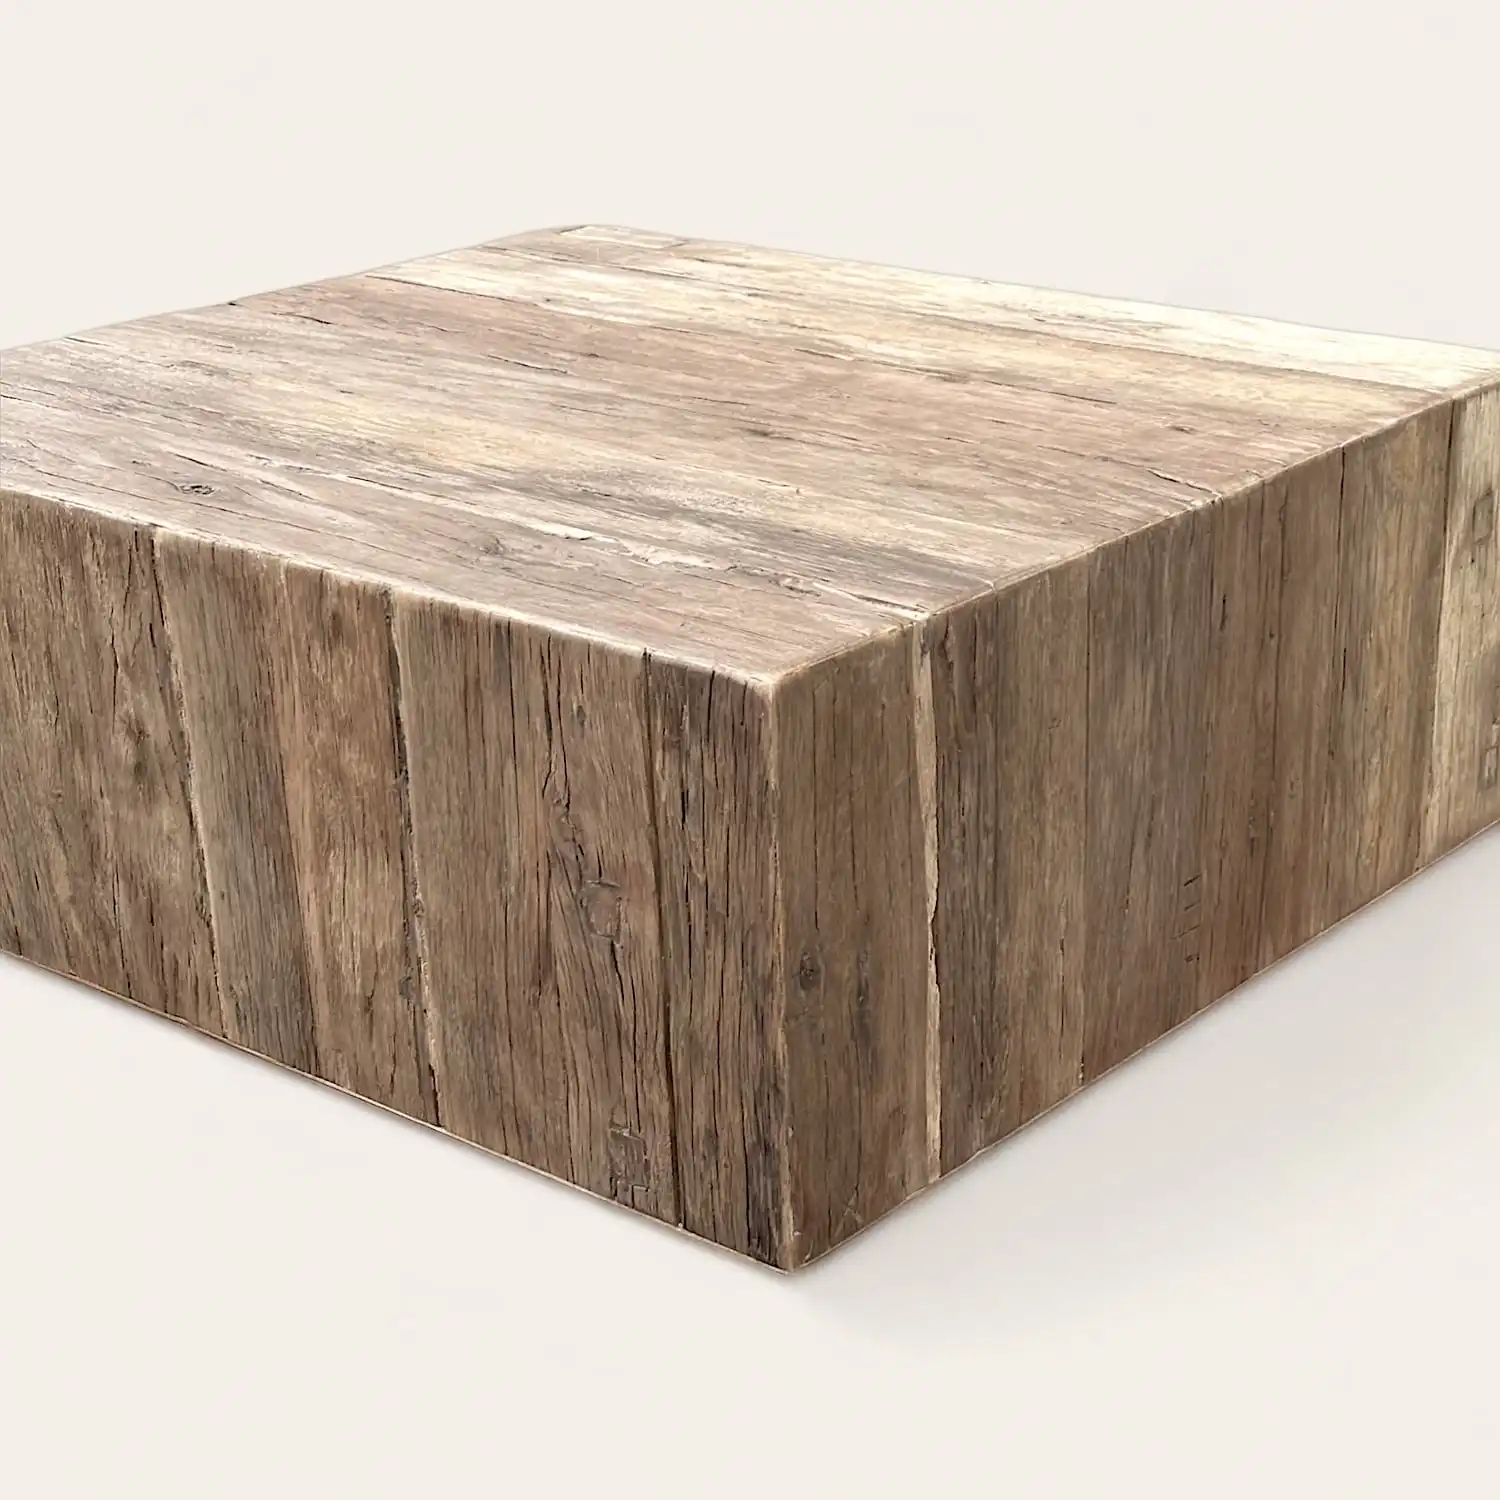  Une table basse rustique en bois de forme carrée. 